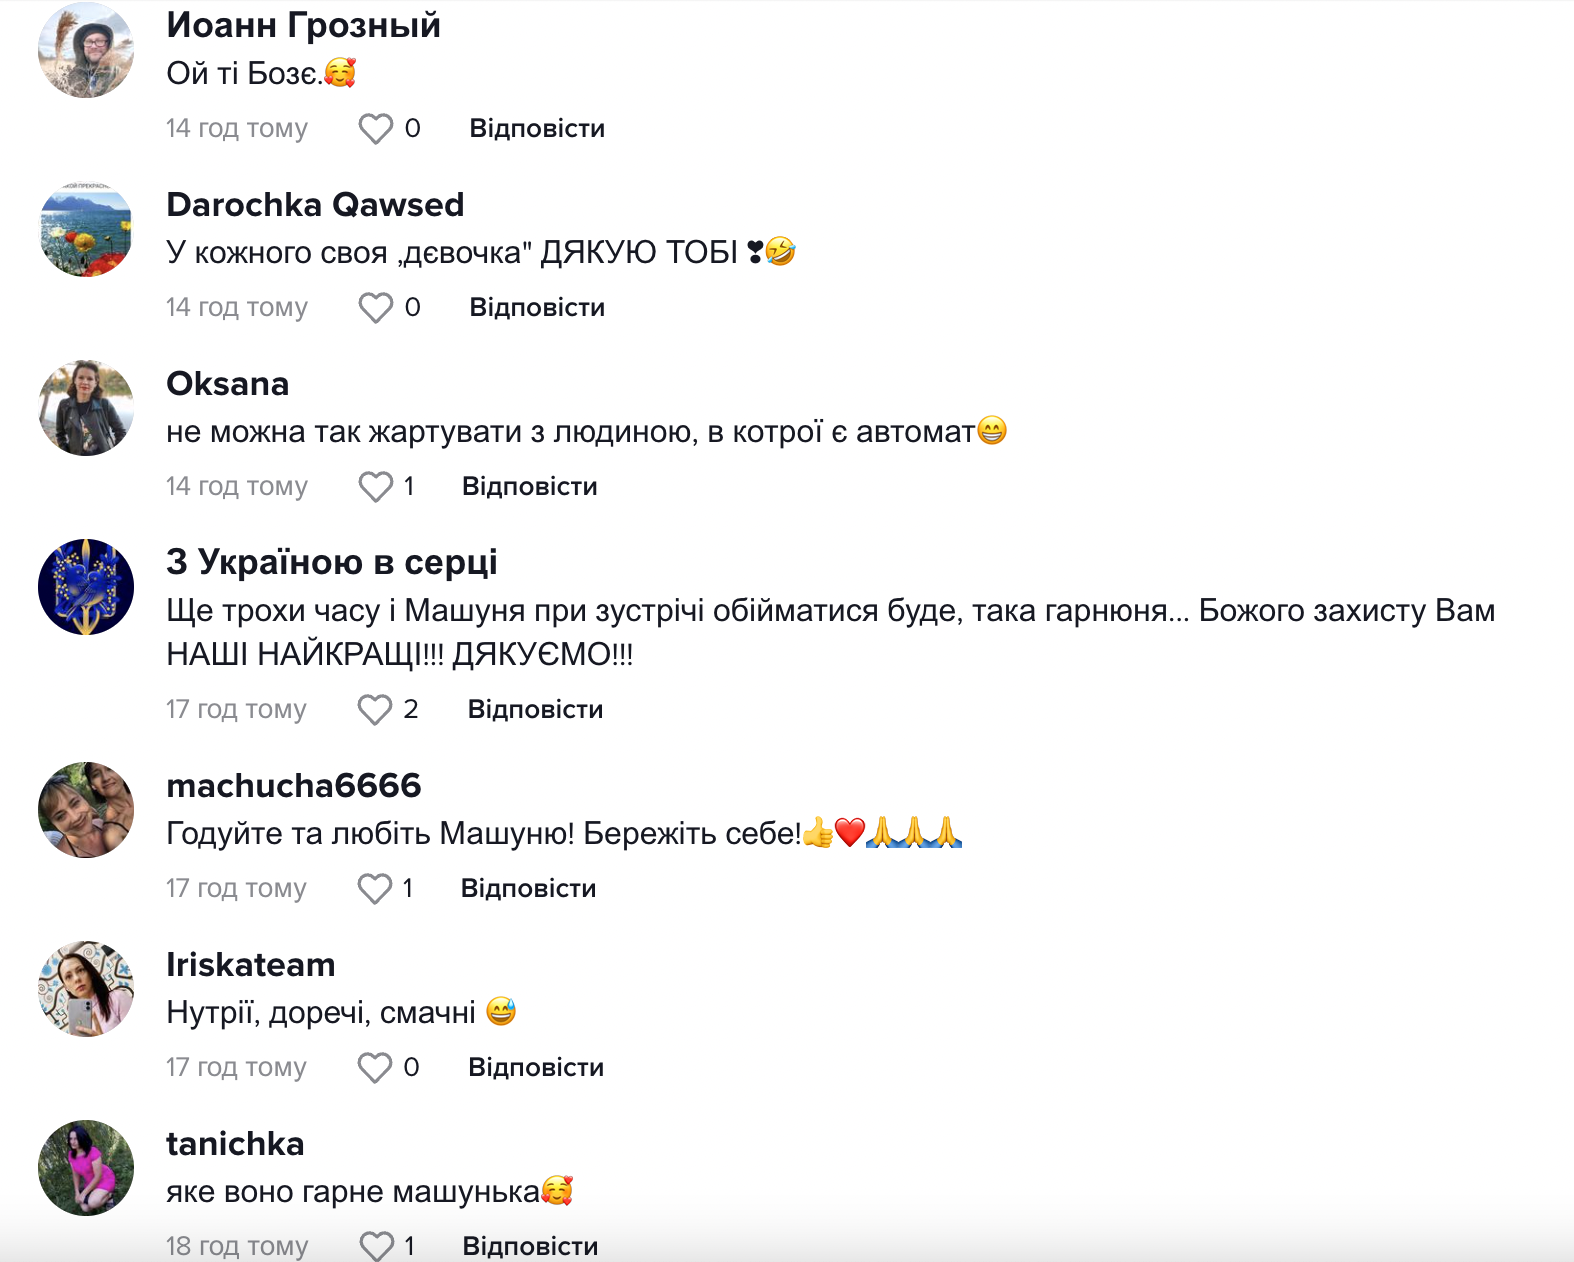 "Привет, моя девочка!": украинский военный показал нутрию, с которой "подружился" на службе. Видео